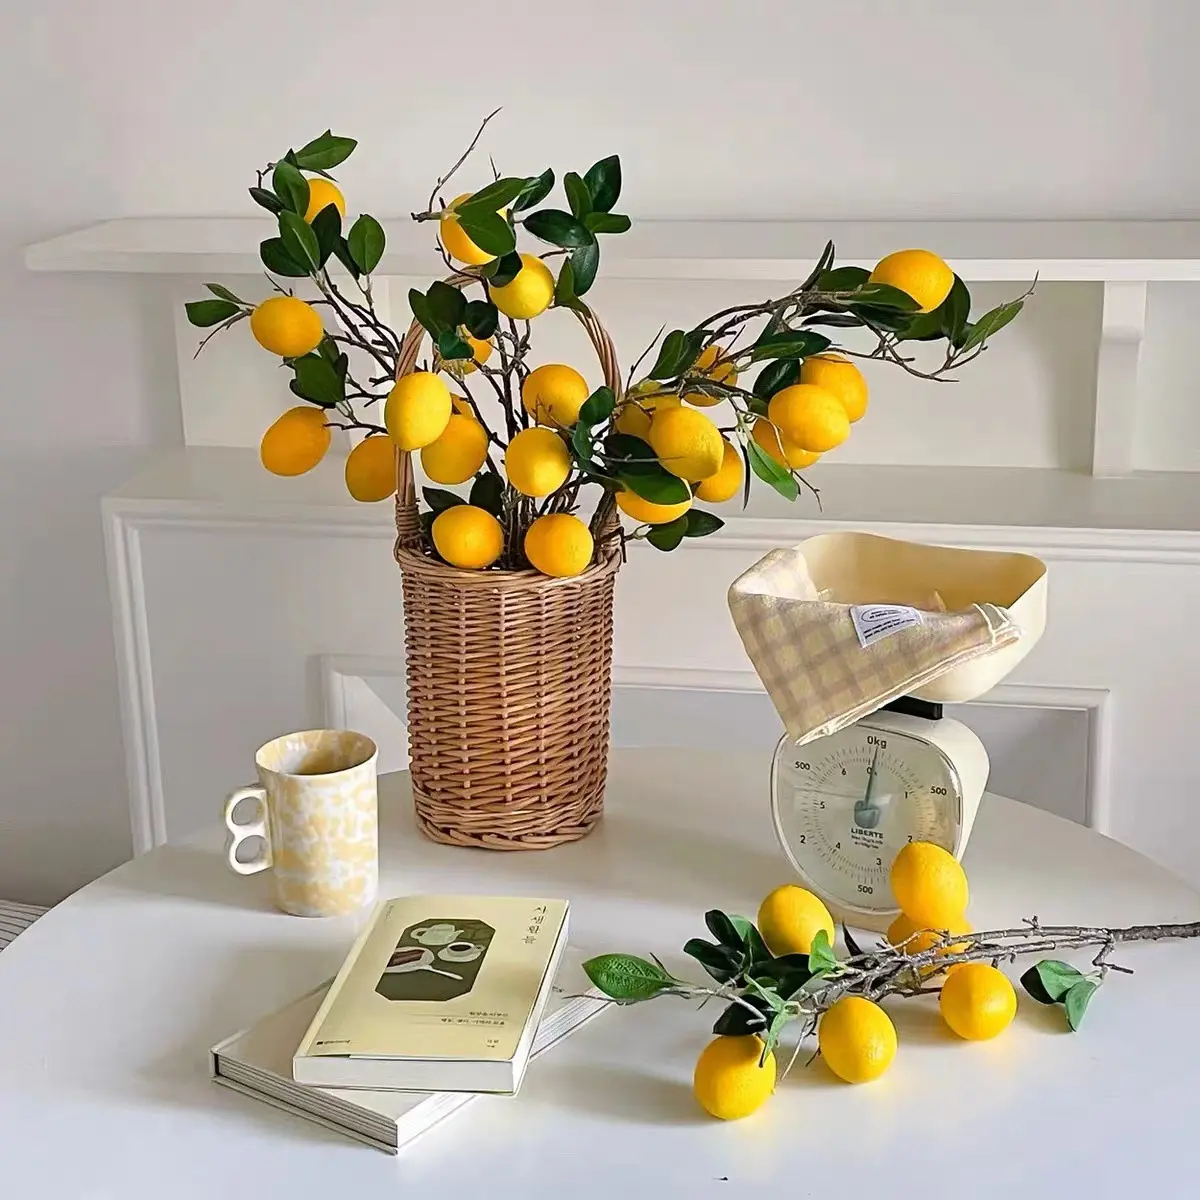 زينة بيت صغير على الطراز الأوروبي، نباتات فاكهة وليمون صناعية